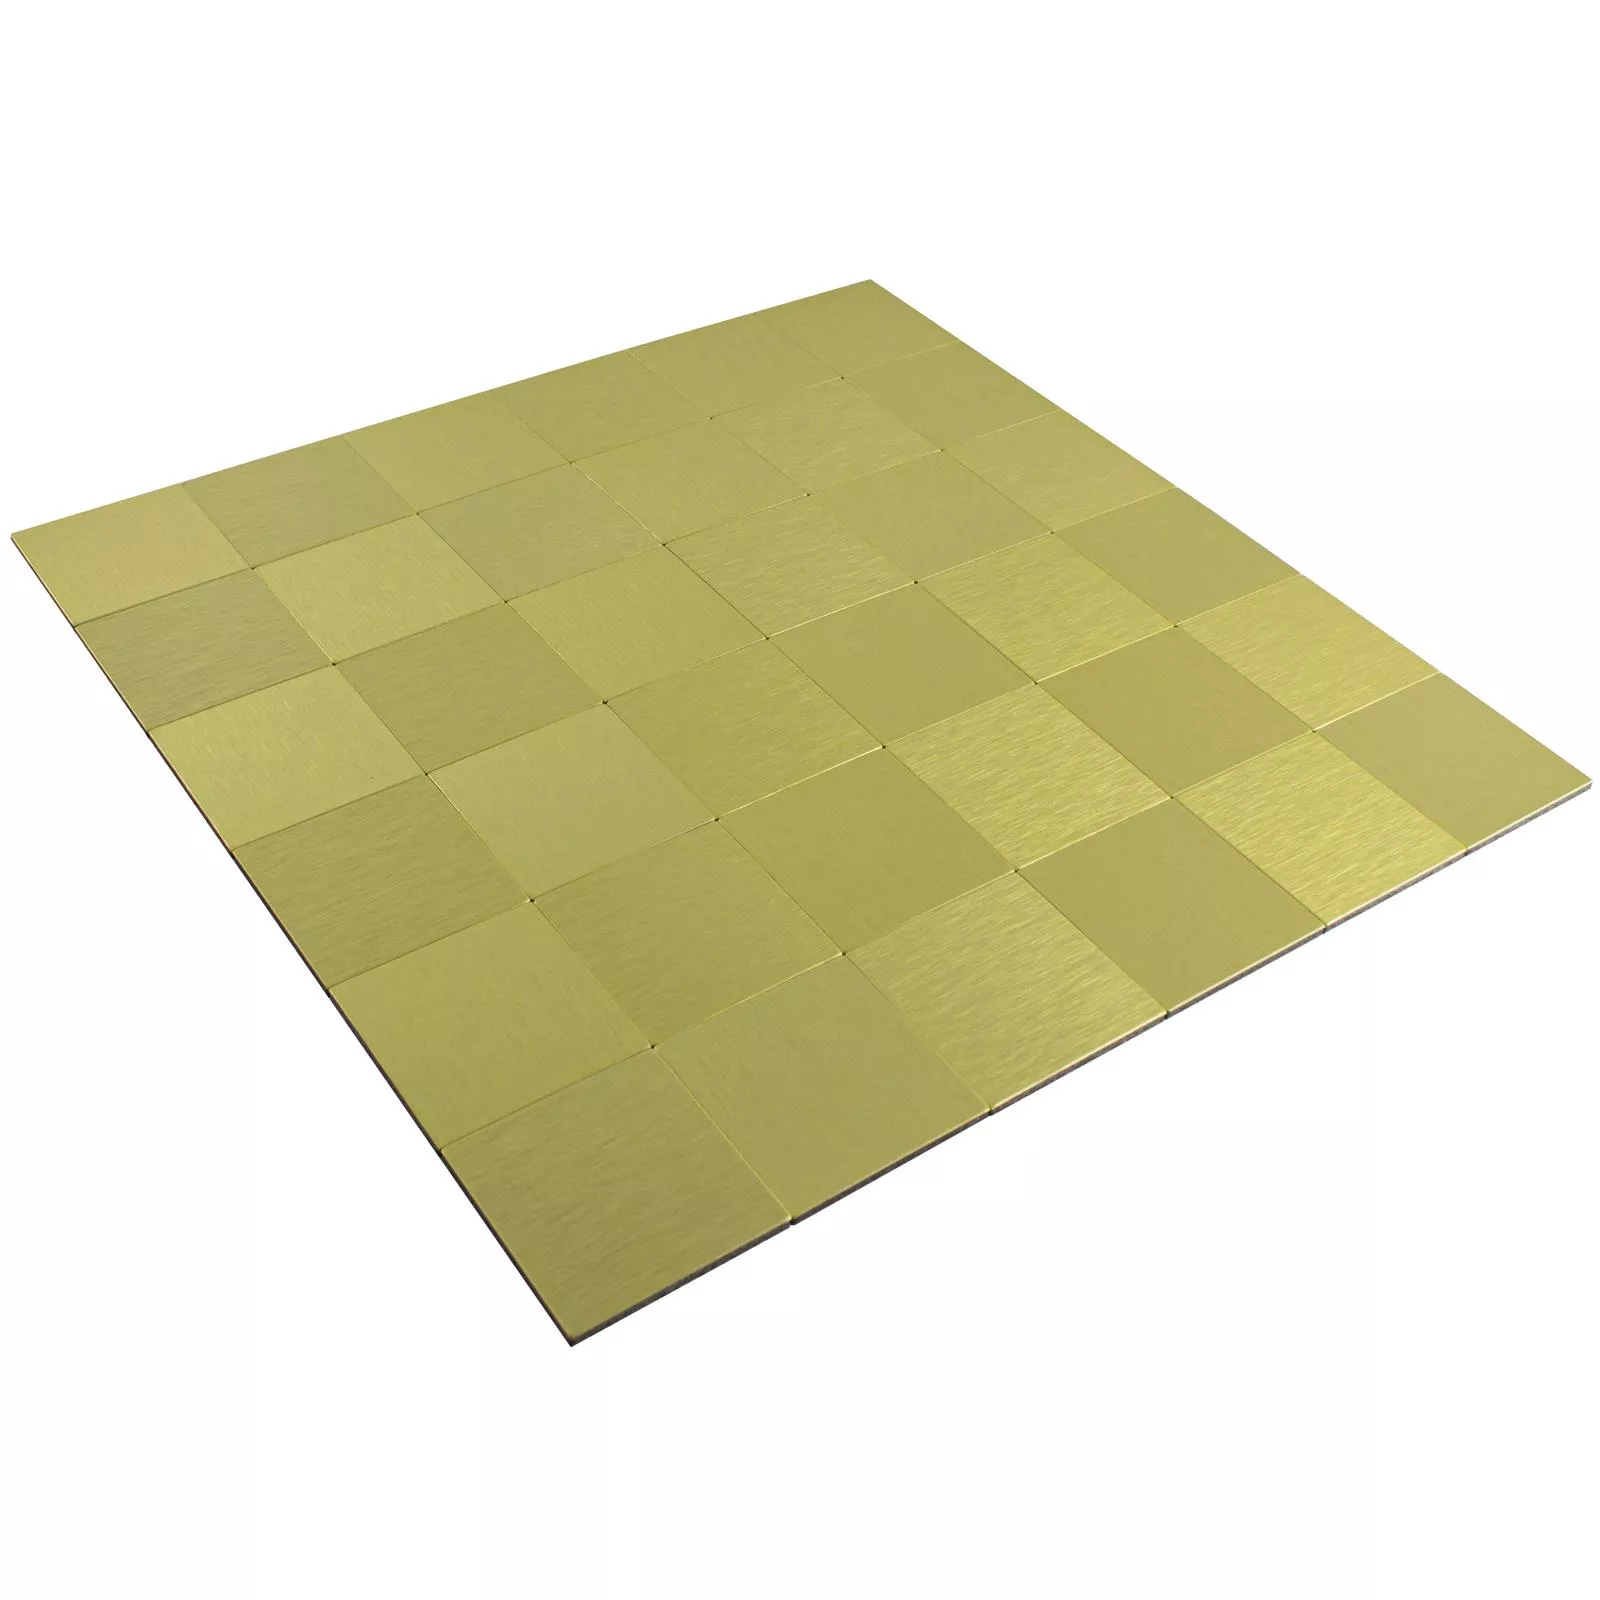 Πρότυπο από Ψηφιδωτά Πλακάκια Mέταλλο Aυτοκόλλητες Vryburg Χρυσός Tετράγωνο 